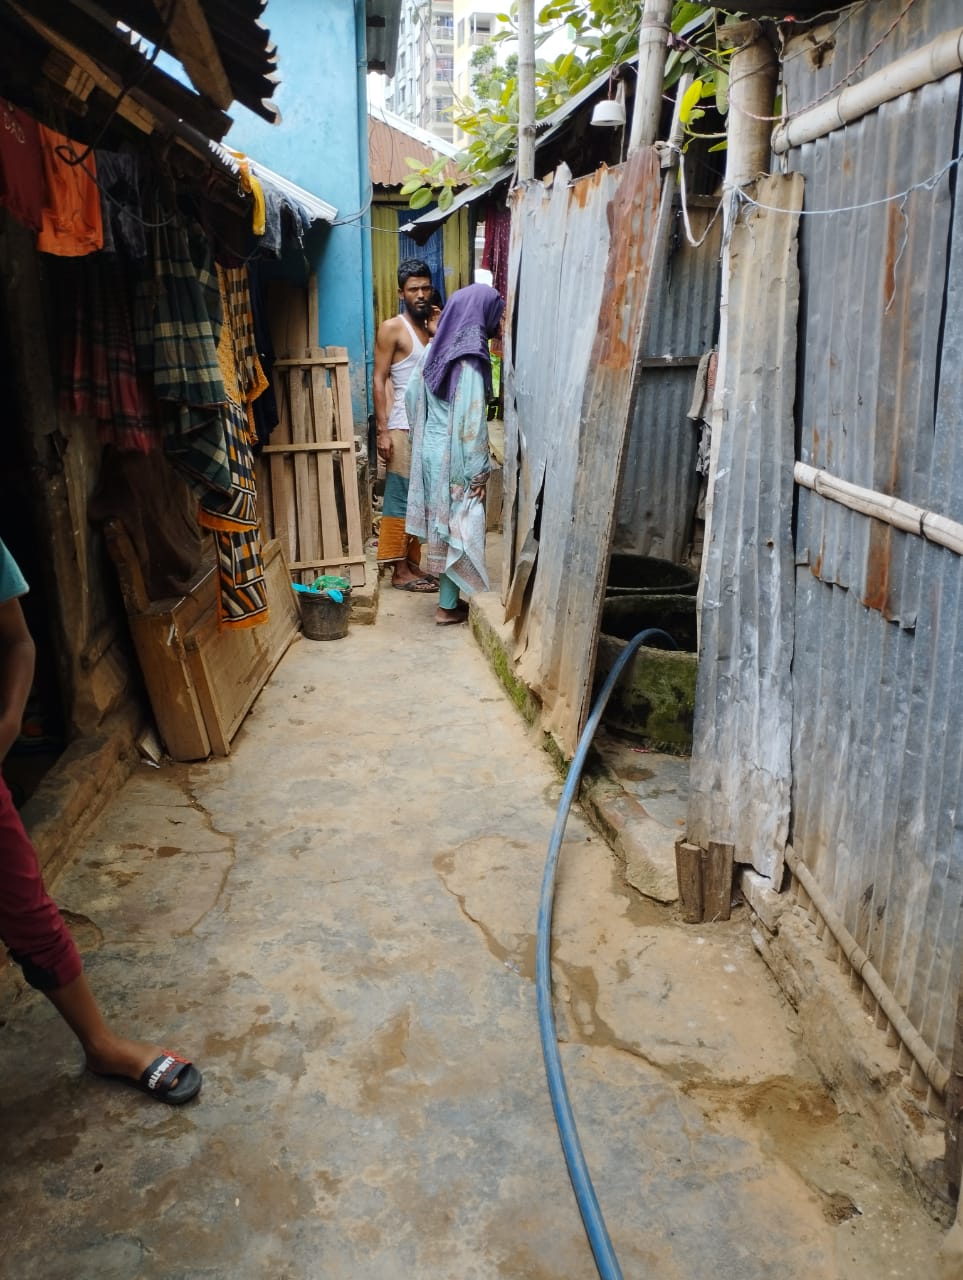 An alley in Mirpur12 slum 2